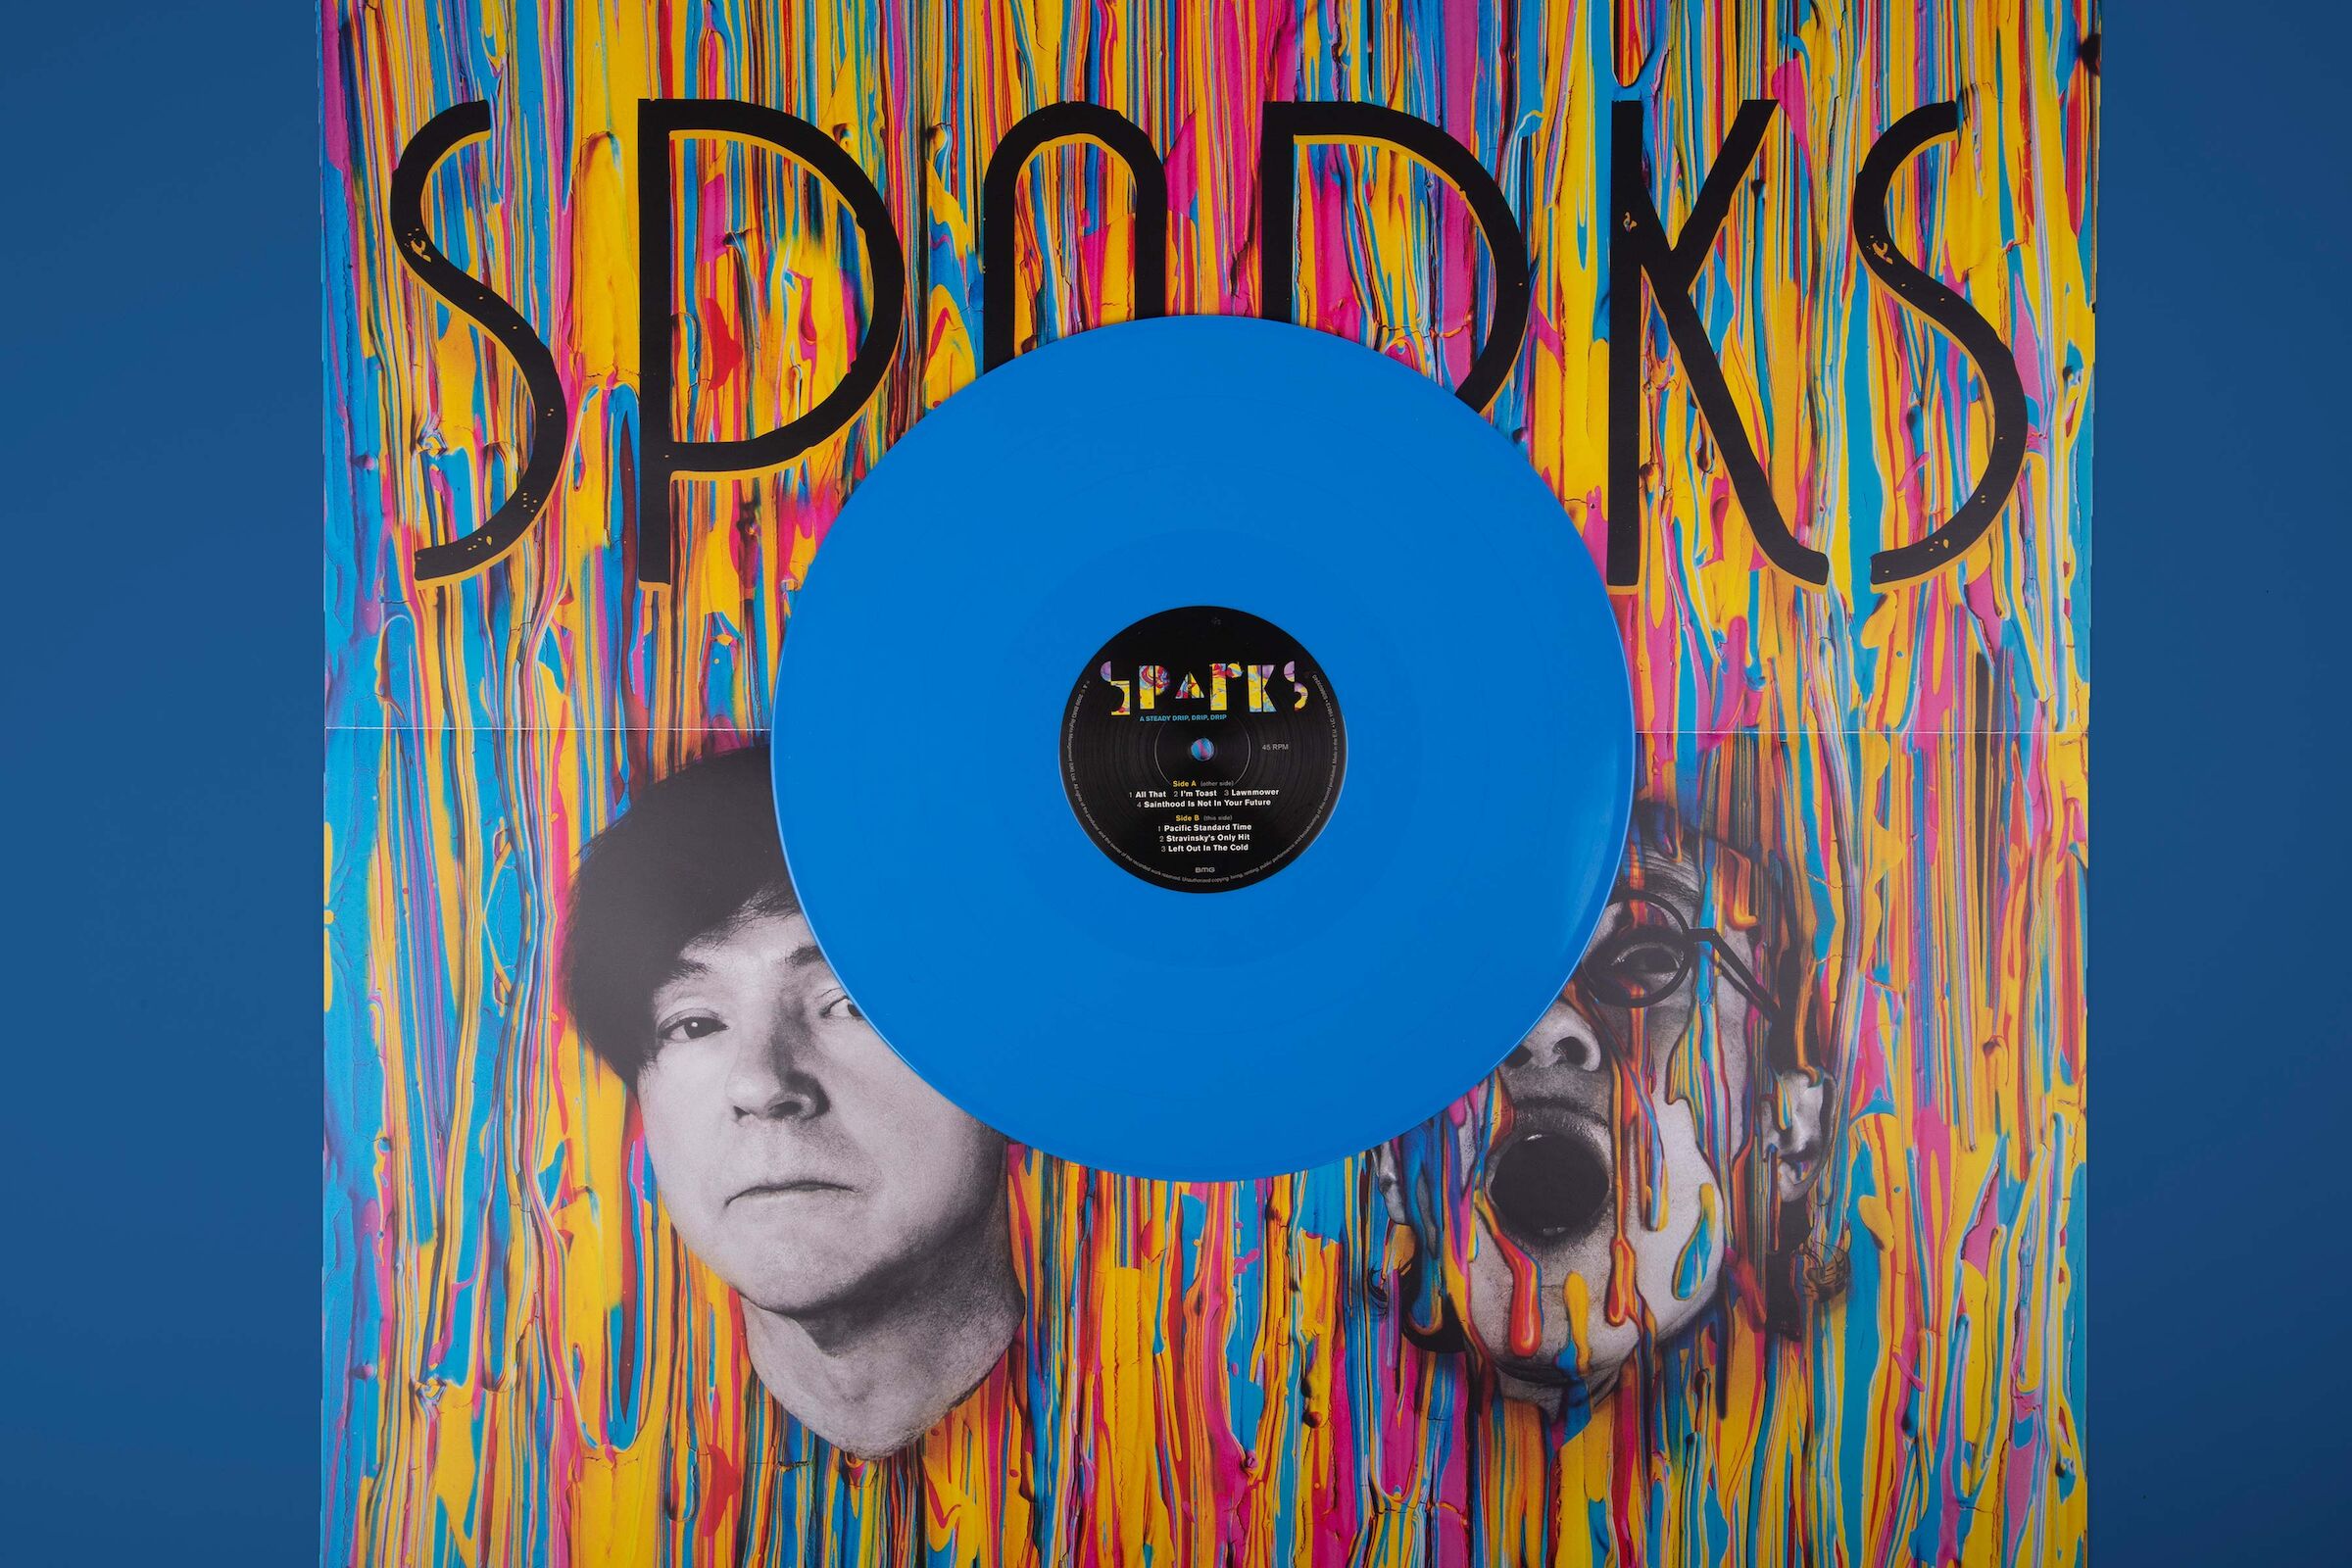 Sparks ‘A Steady Drip, Drip, Drip’ 12" colour vinyl